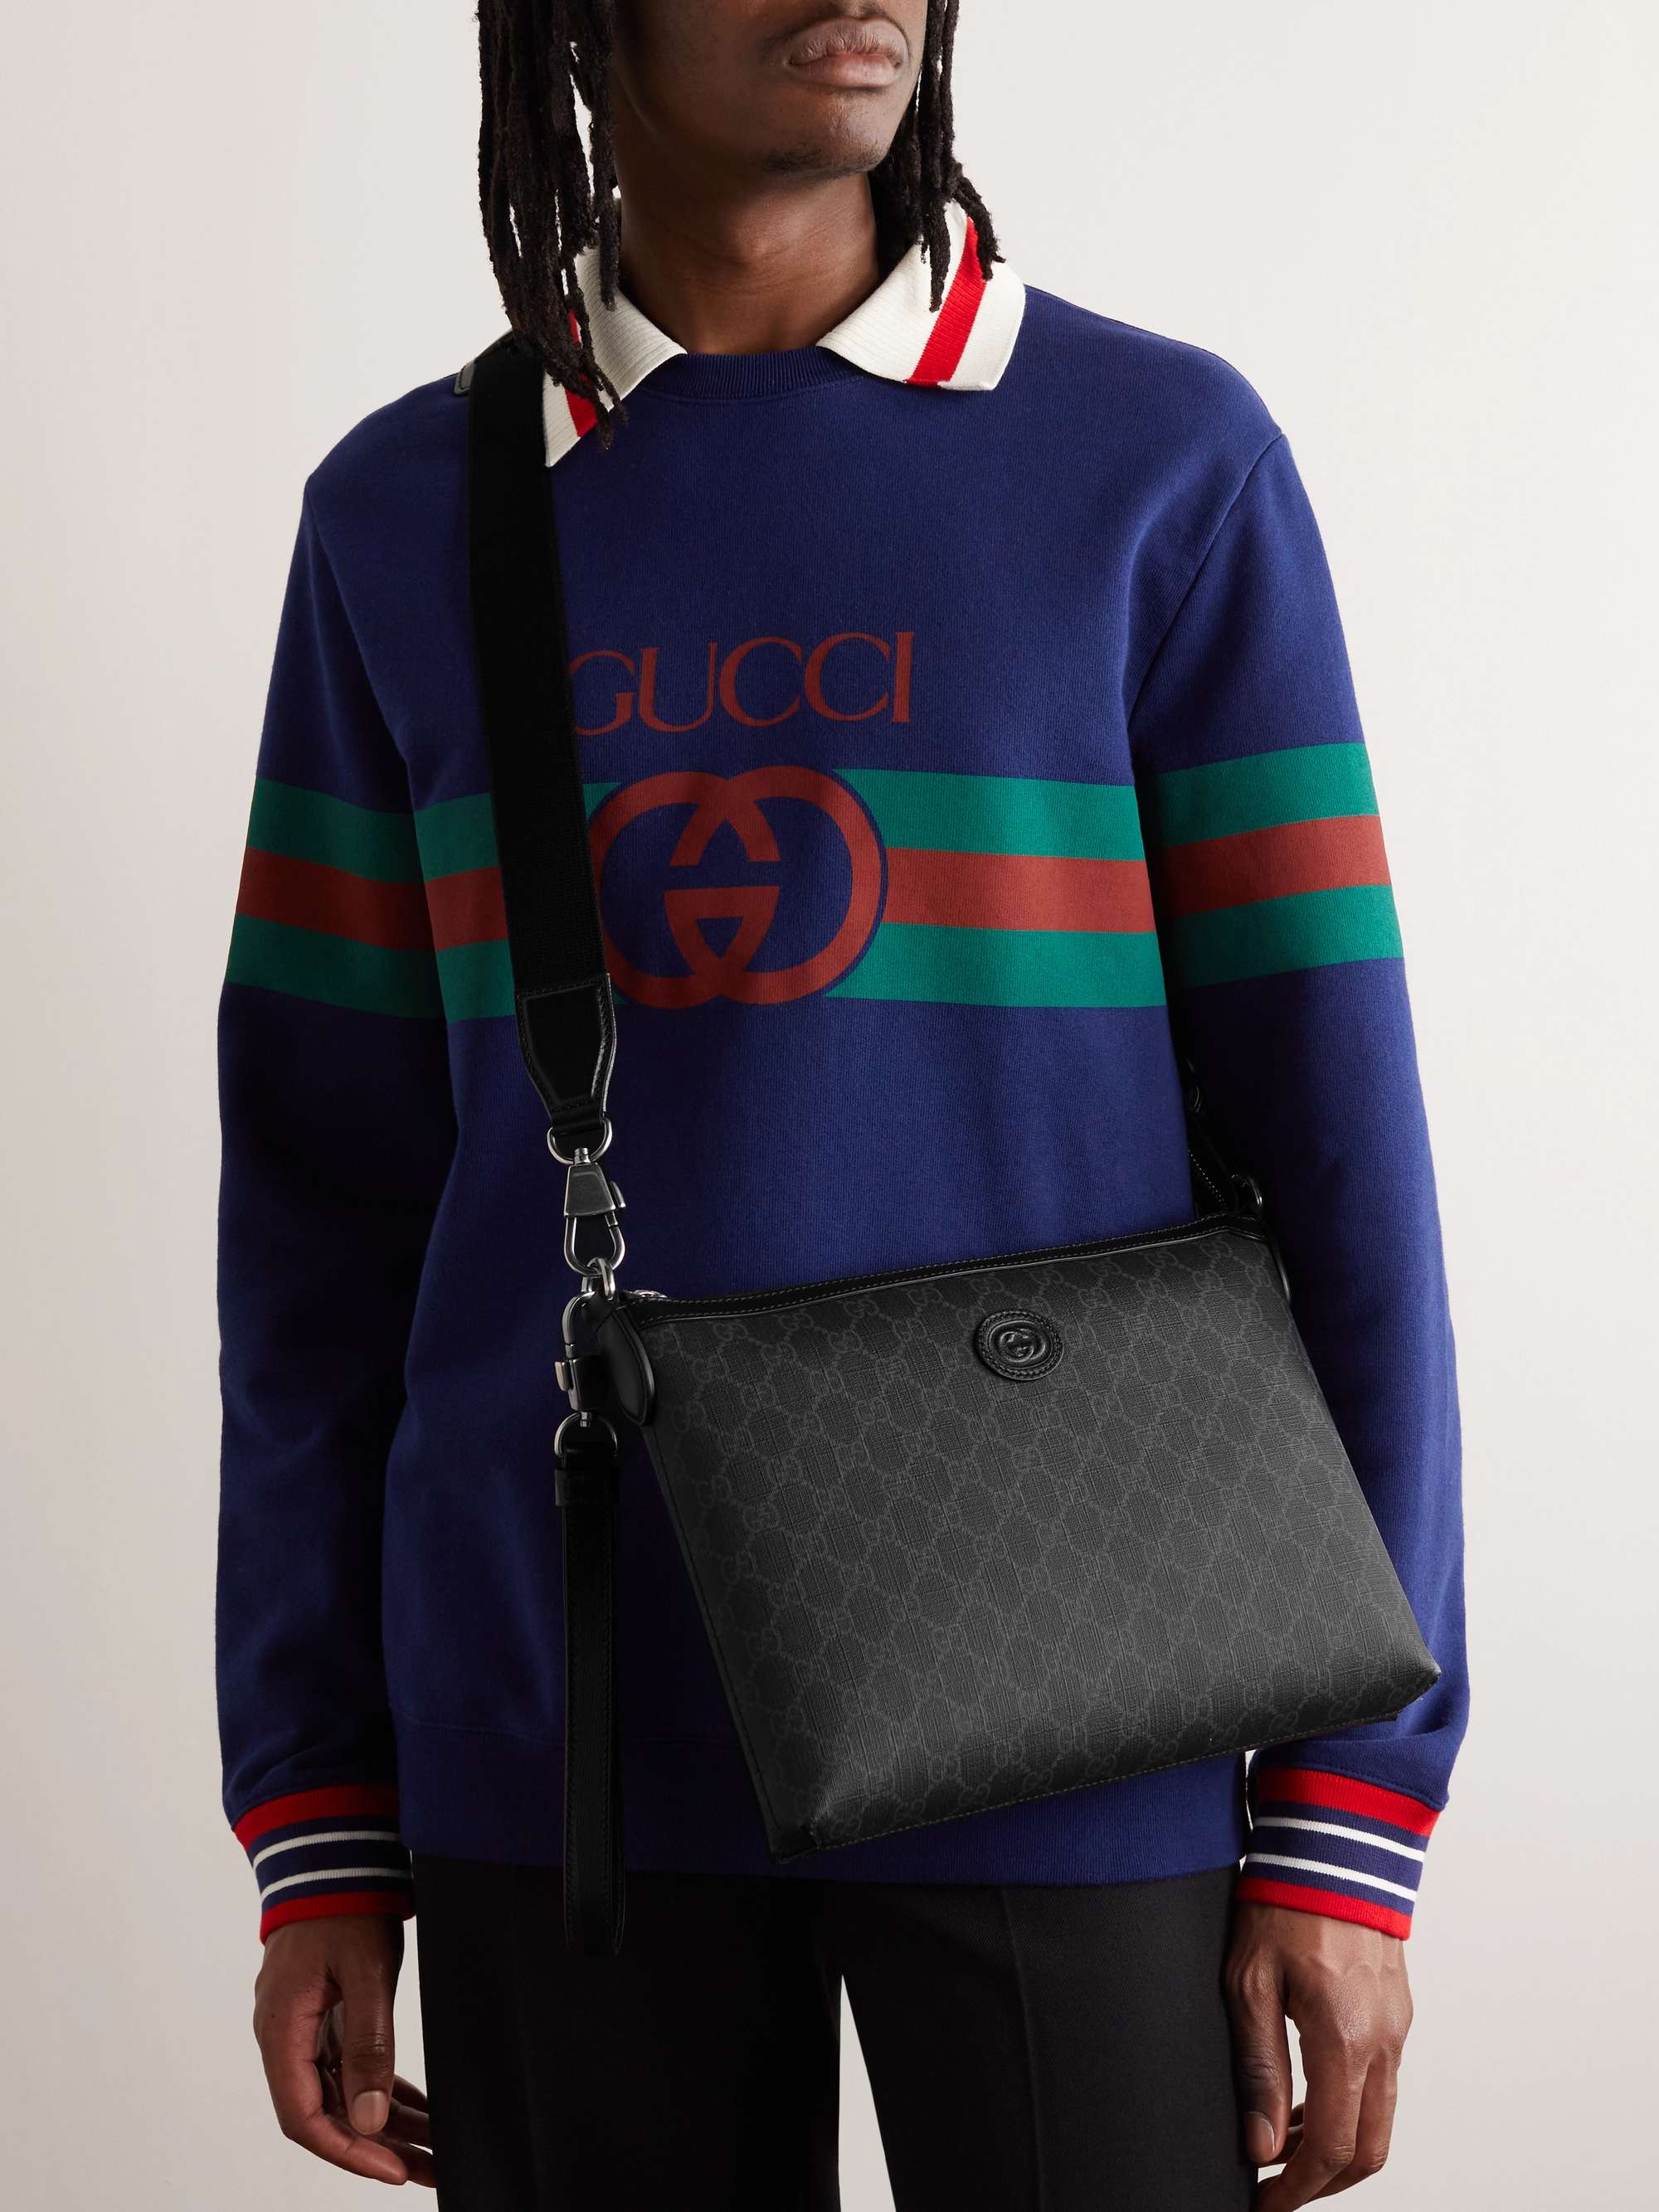 Gucci Men's GG Supreme Leather-trimmed Messenger Bag - Black